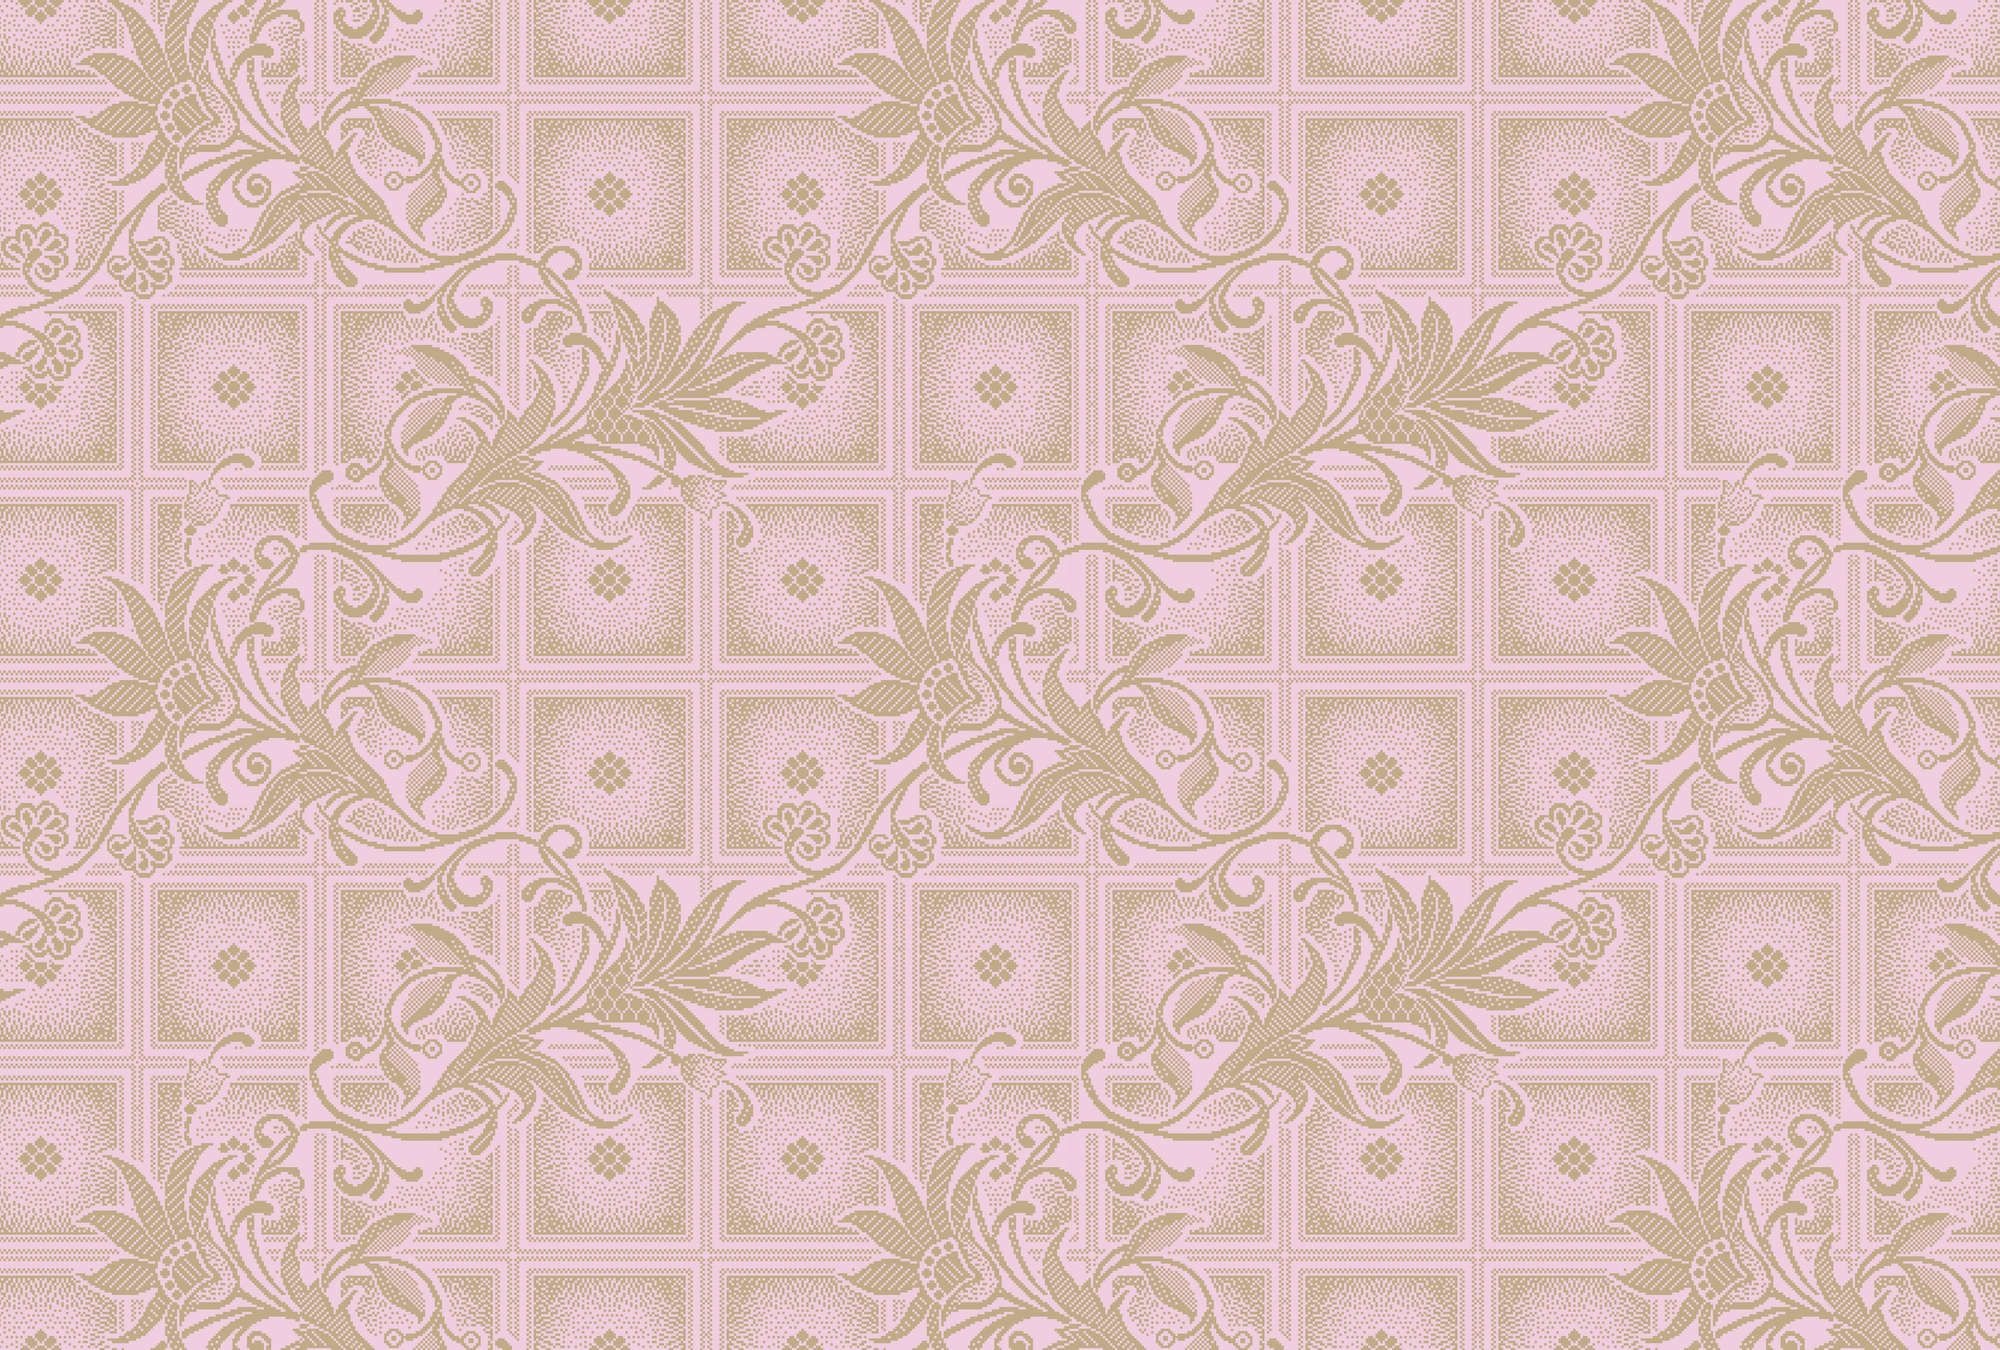             Fototapete »vivian« - Quadrate im Pixel-Stil mit Blumen – Rosa | Glattes, leicht glänzendes Premiumvlies
        